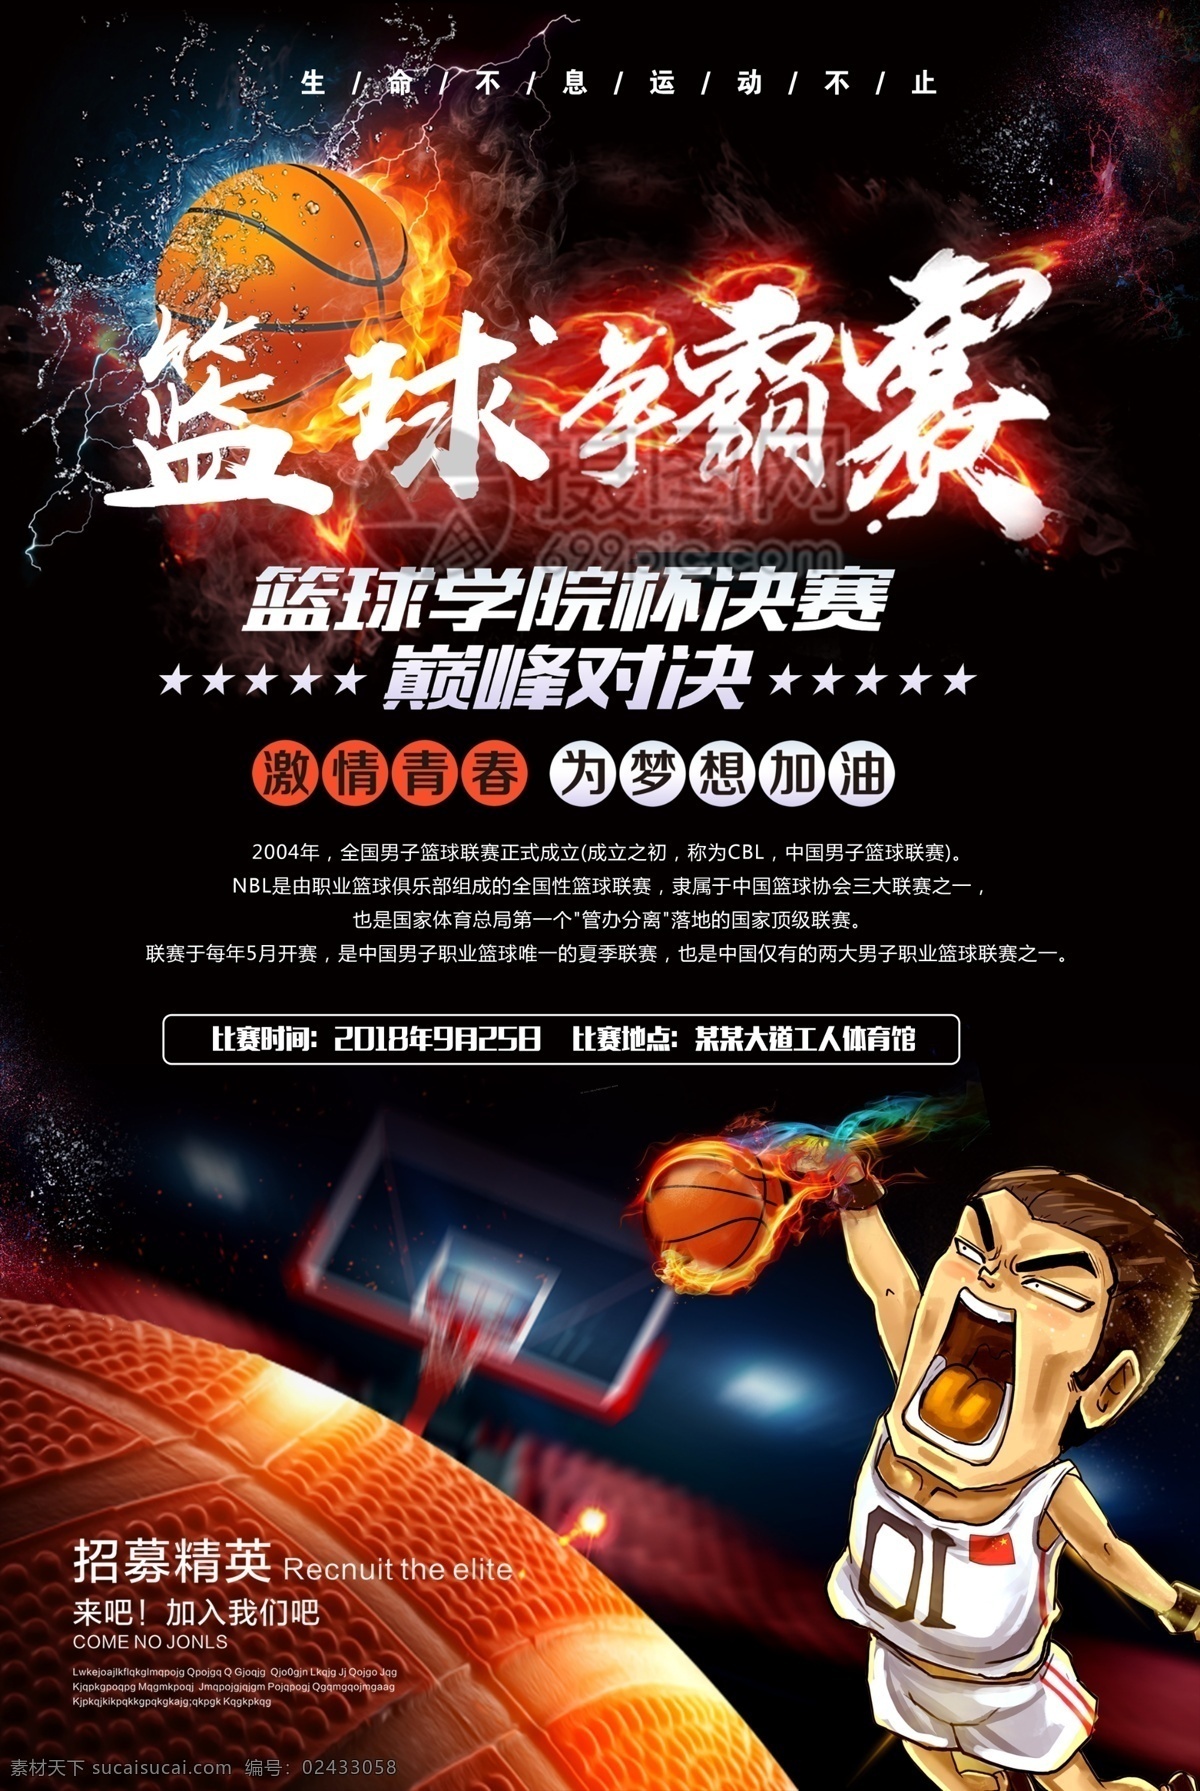 黑色 酷 炫 篮球 联赛 宣传海报 酷炫海报 篮球联赛海报 打篮球 篮球比赛 nba 海报 篮球比赛海报